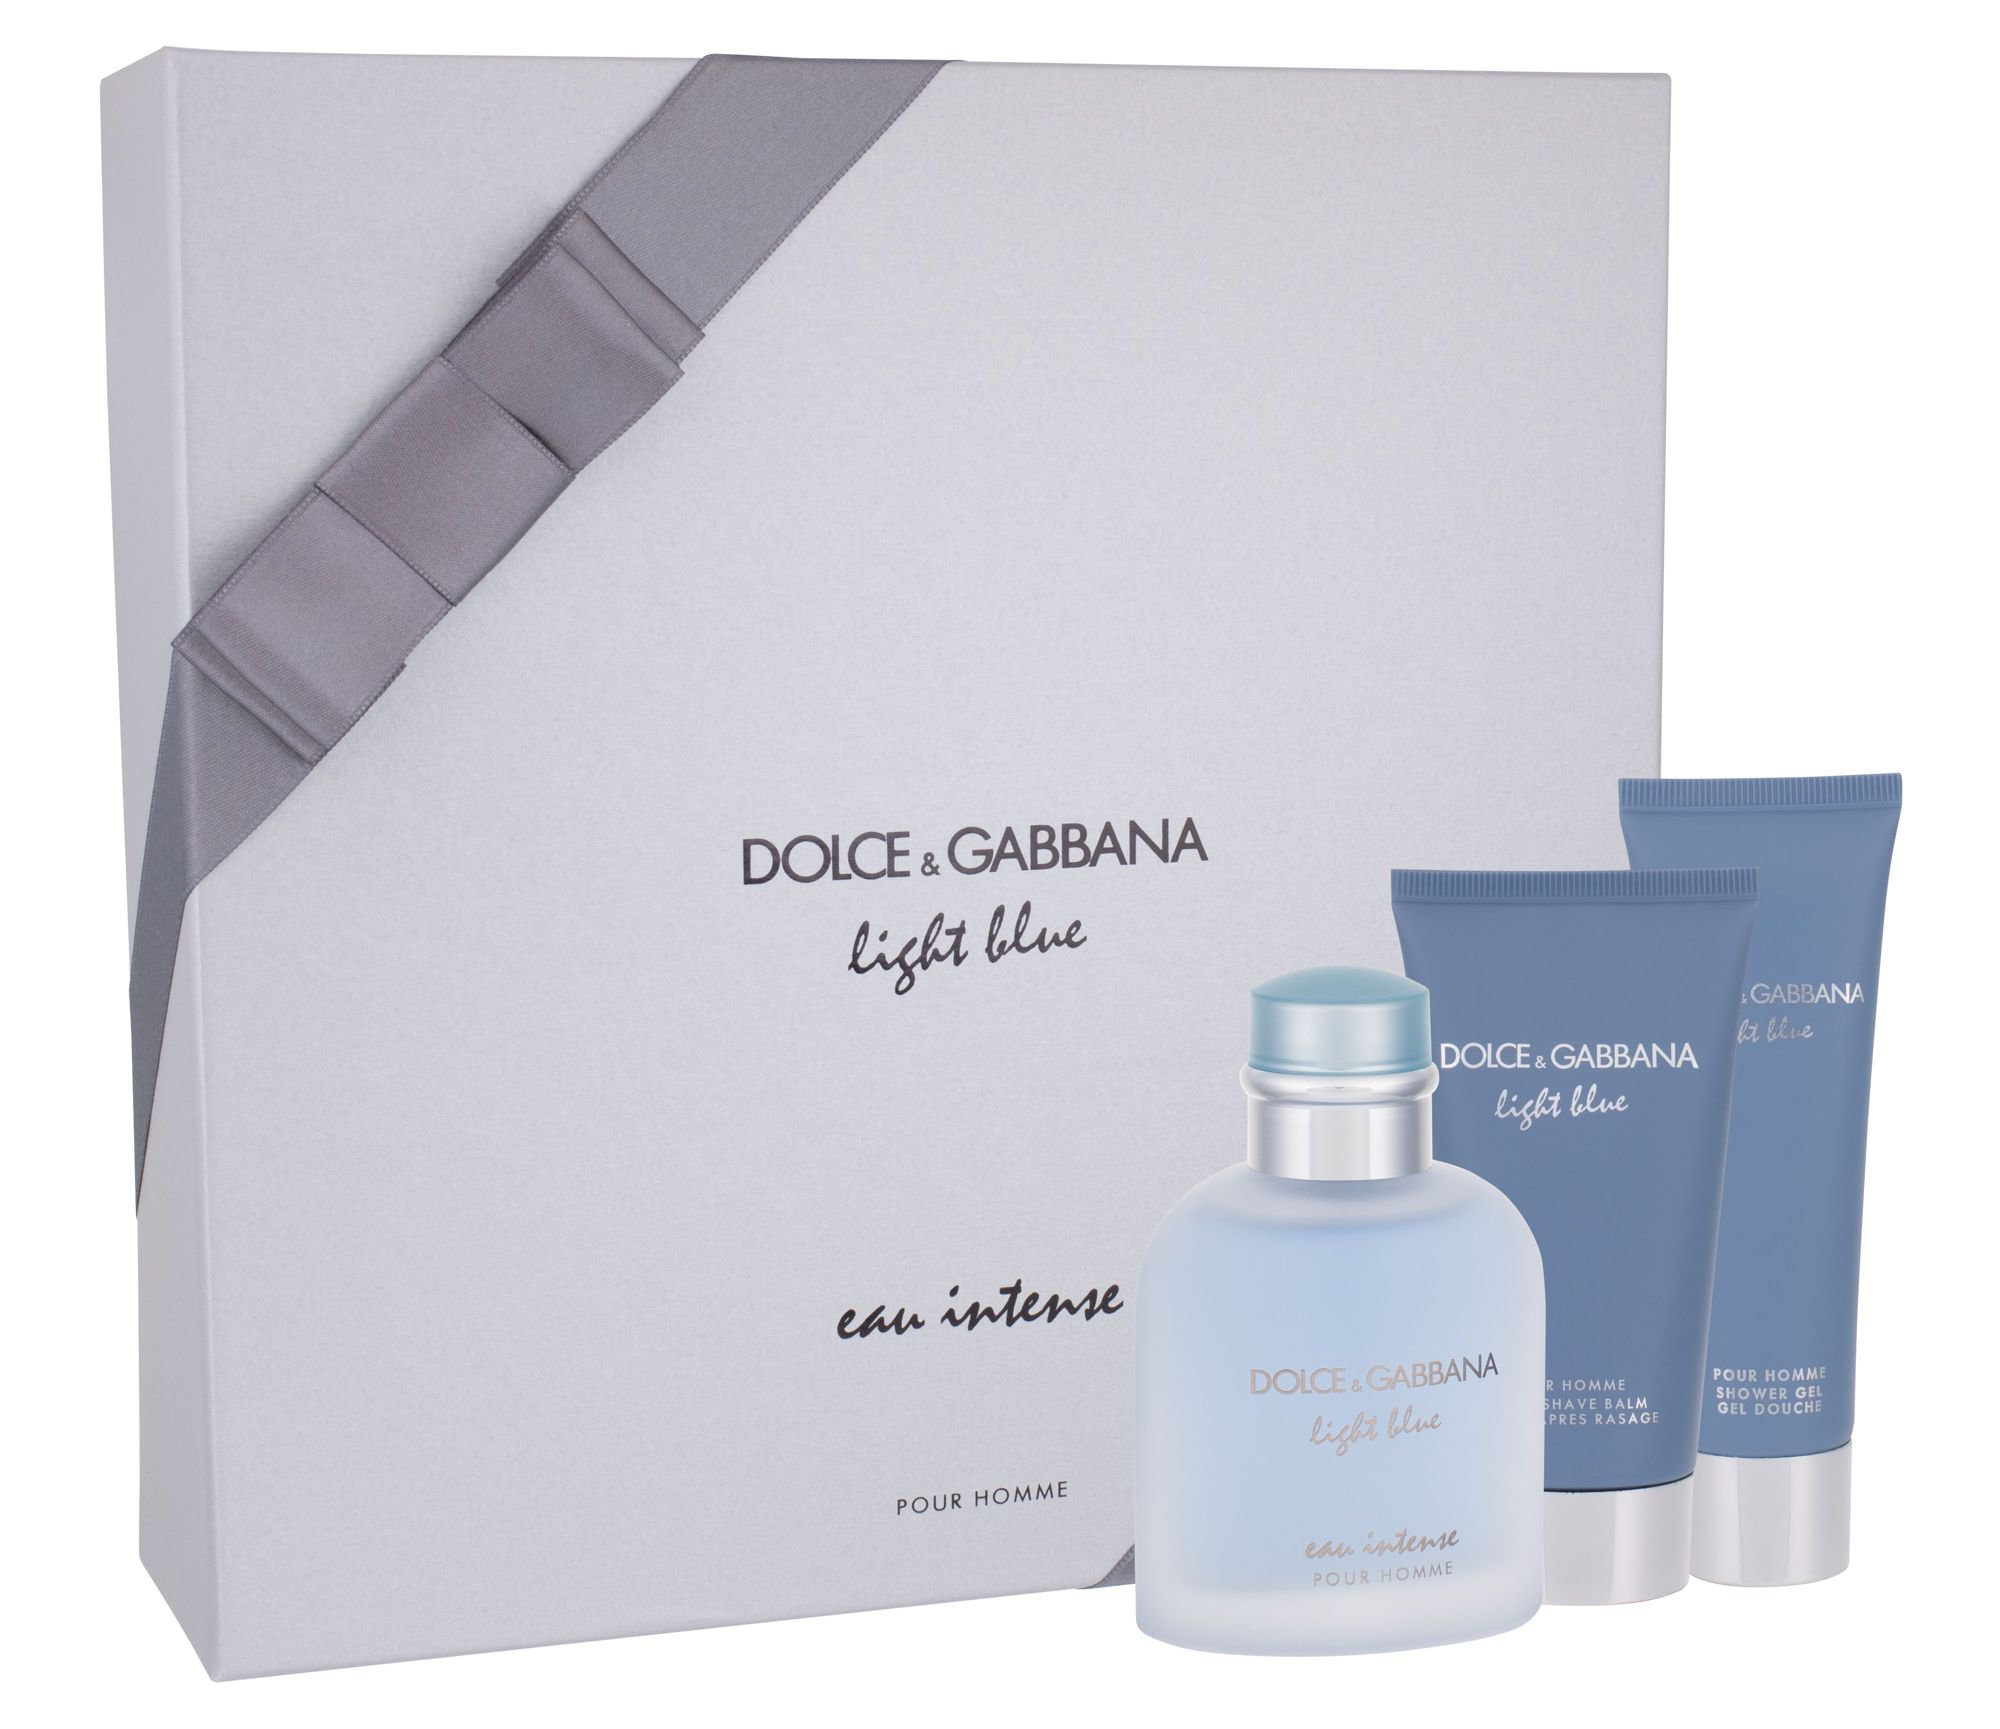 Dolce&Gabbana Light Blue Eau Intense Pour Homme, edp 100 ml + tusfürdő gél 50 ml + After shave balm 75 ml